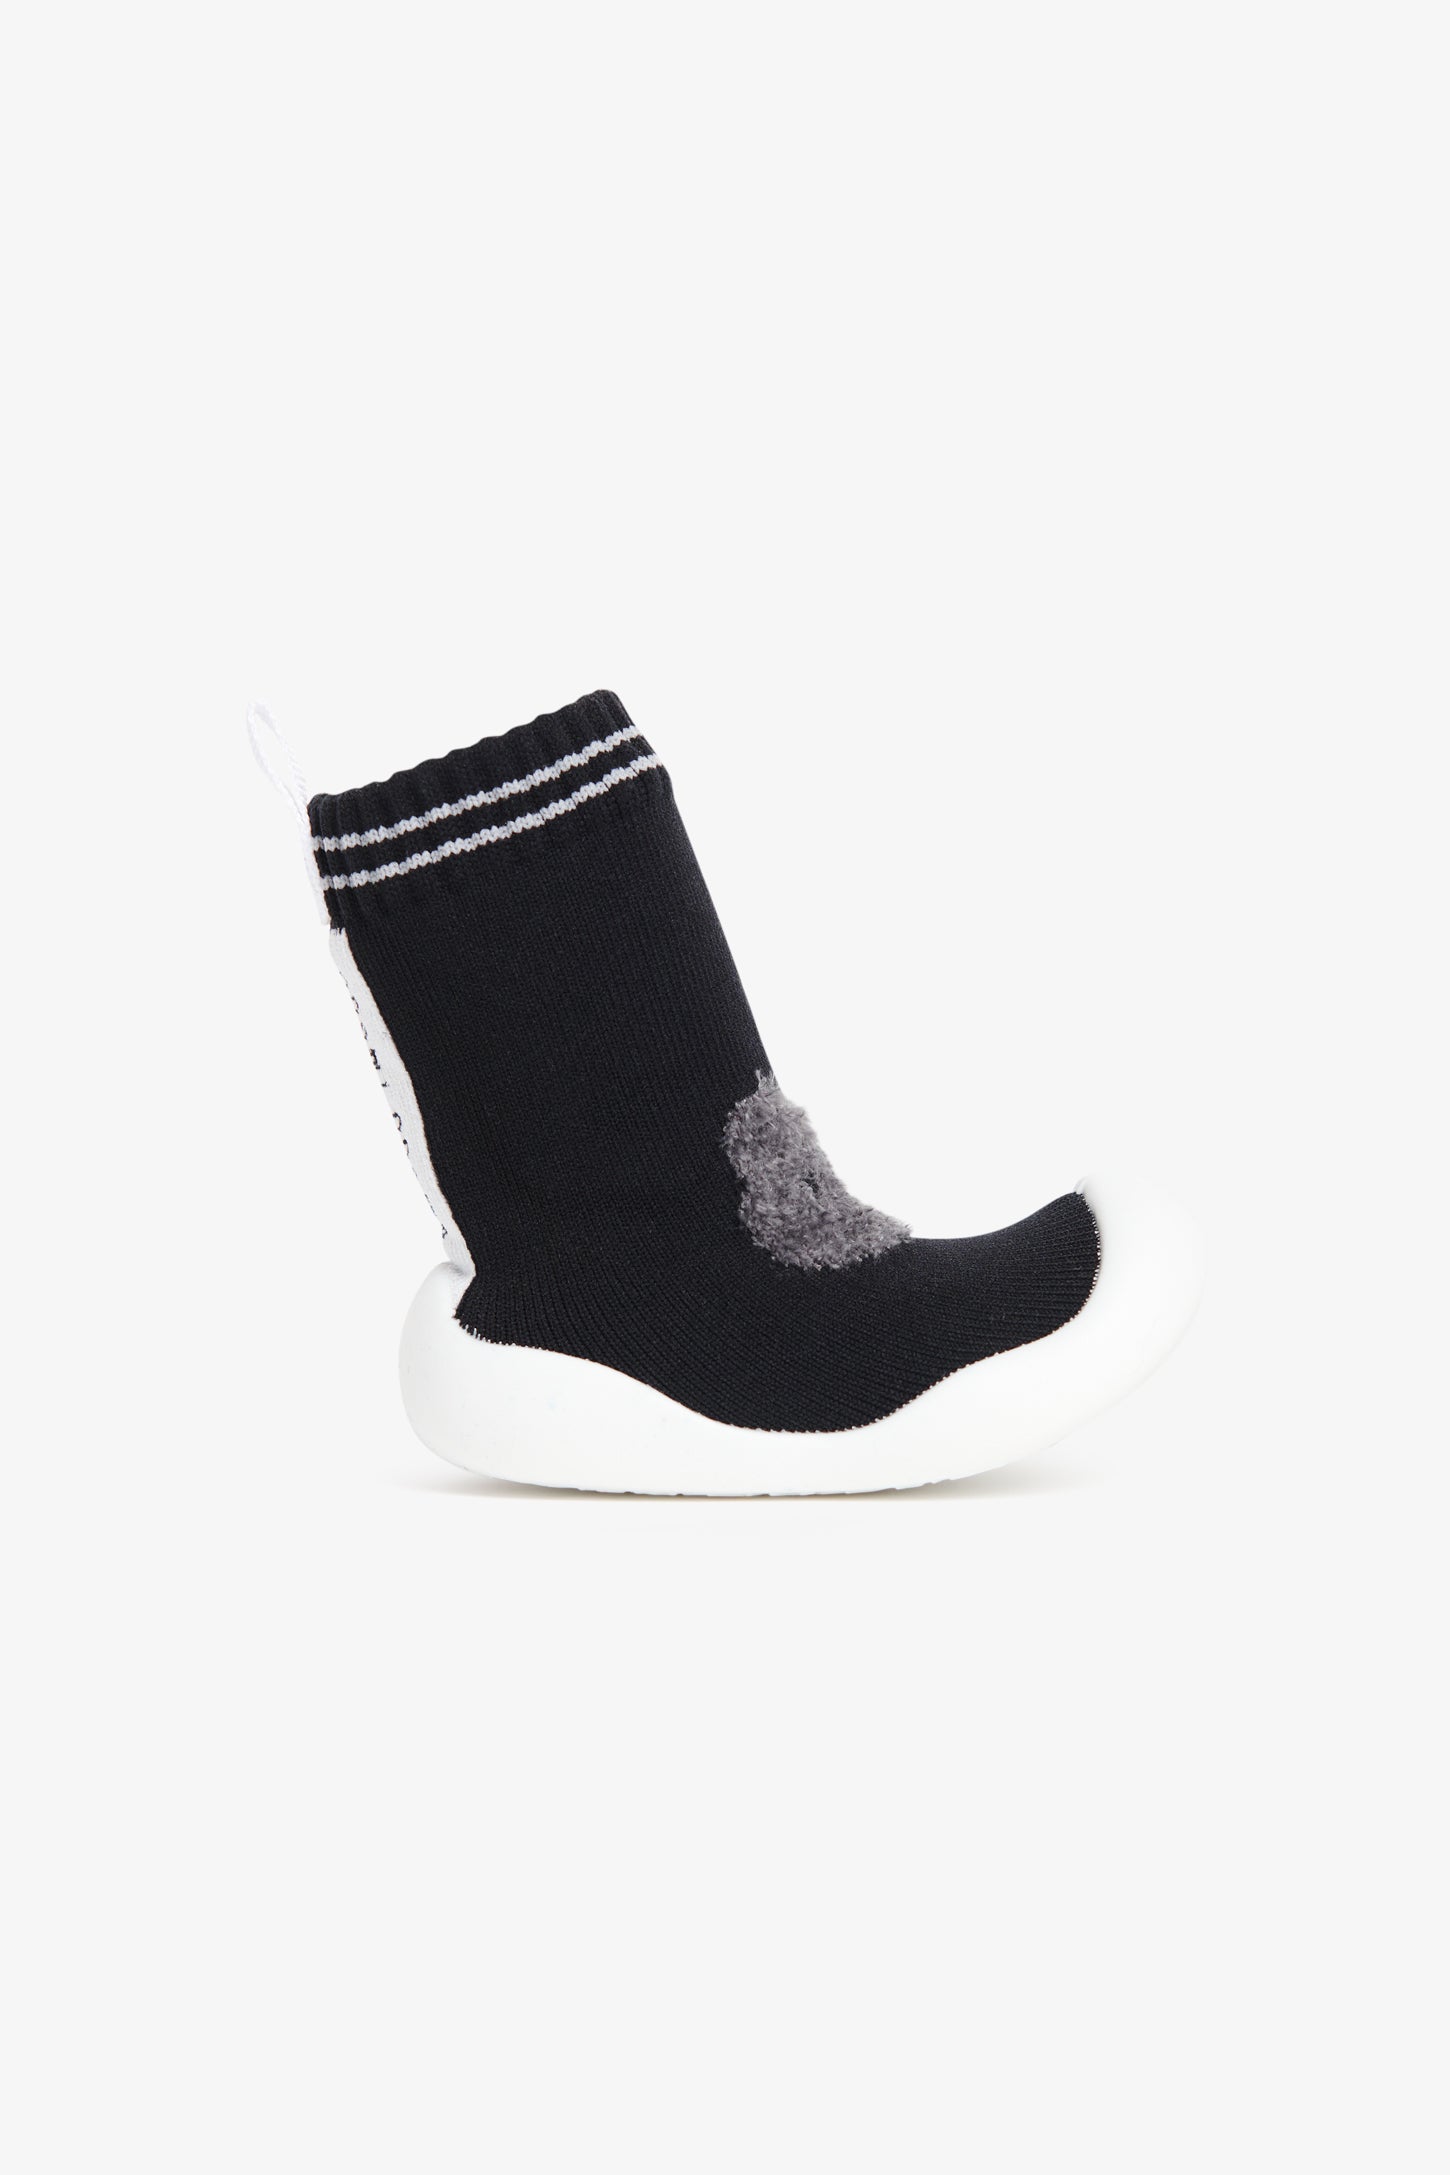 Pantoufle-chaussette en tricot avec semelle moulée - Bébé && NOIR